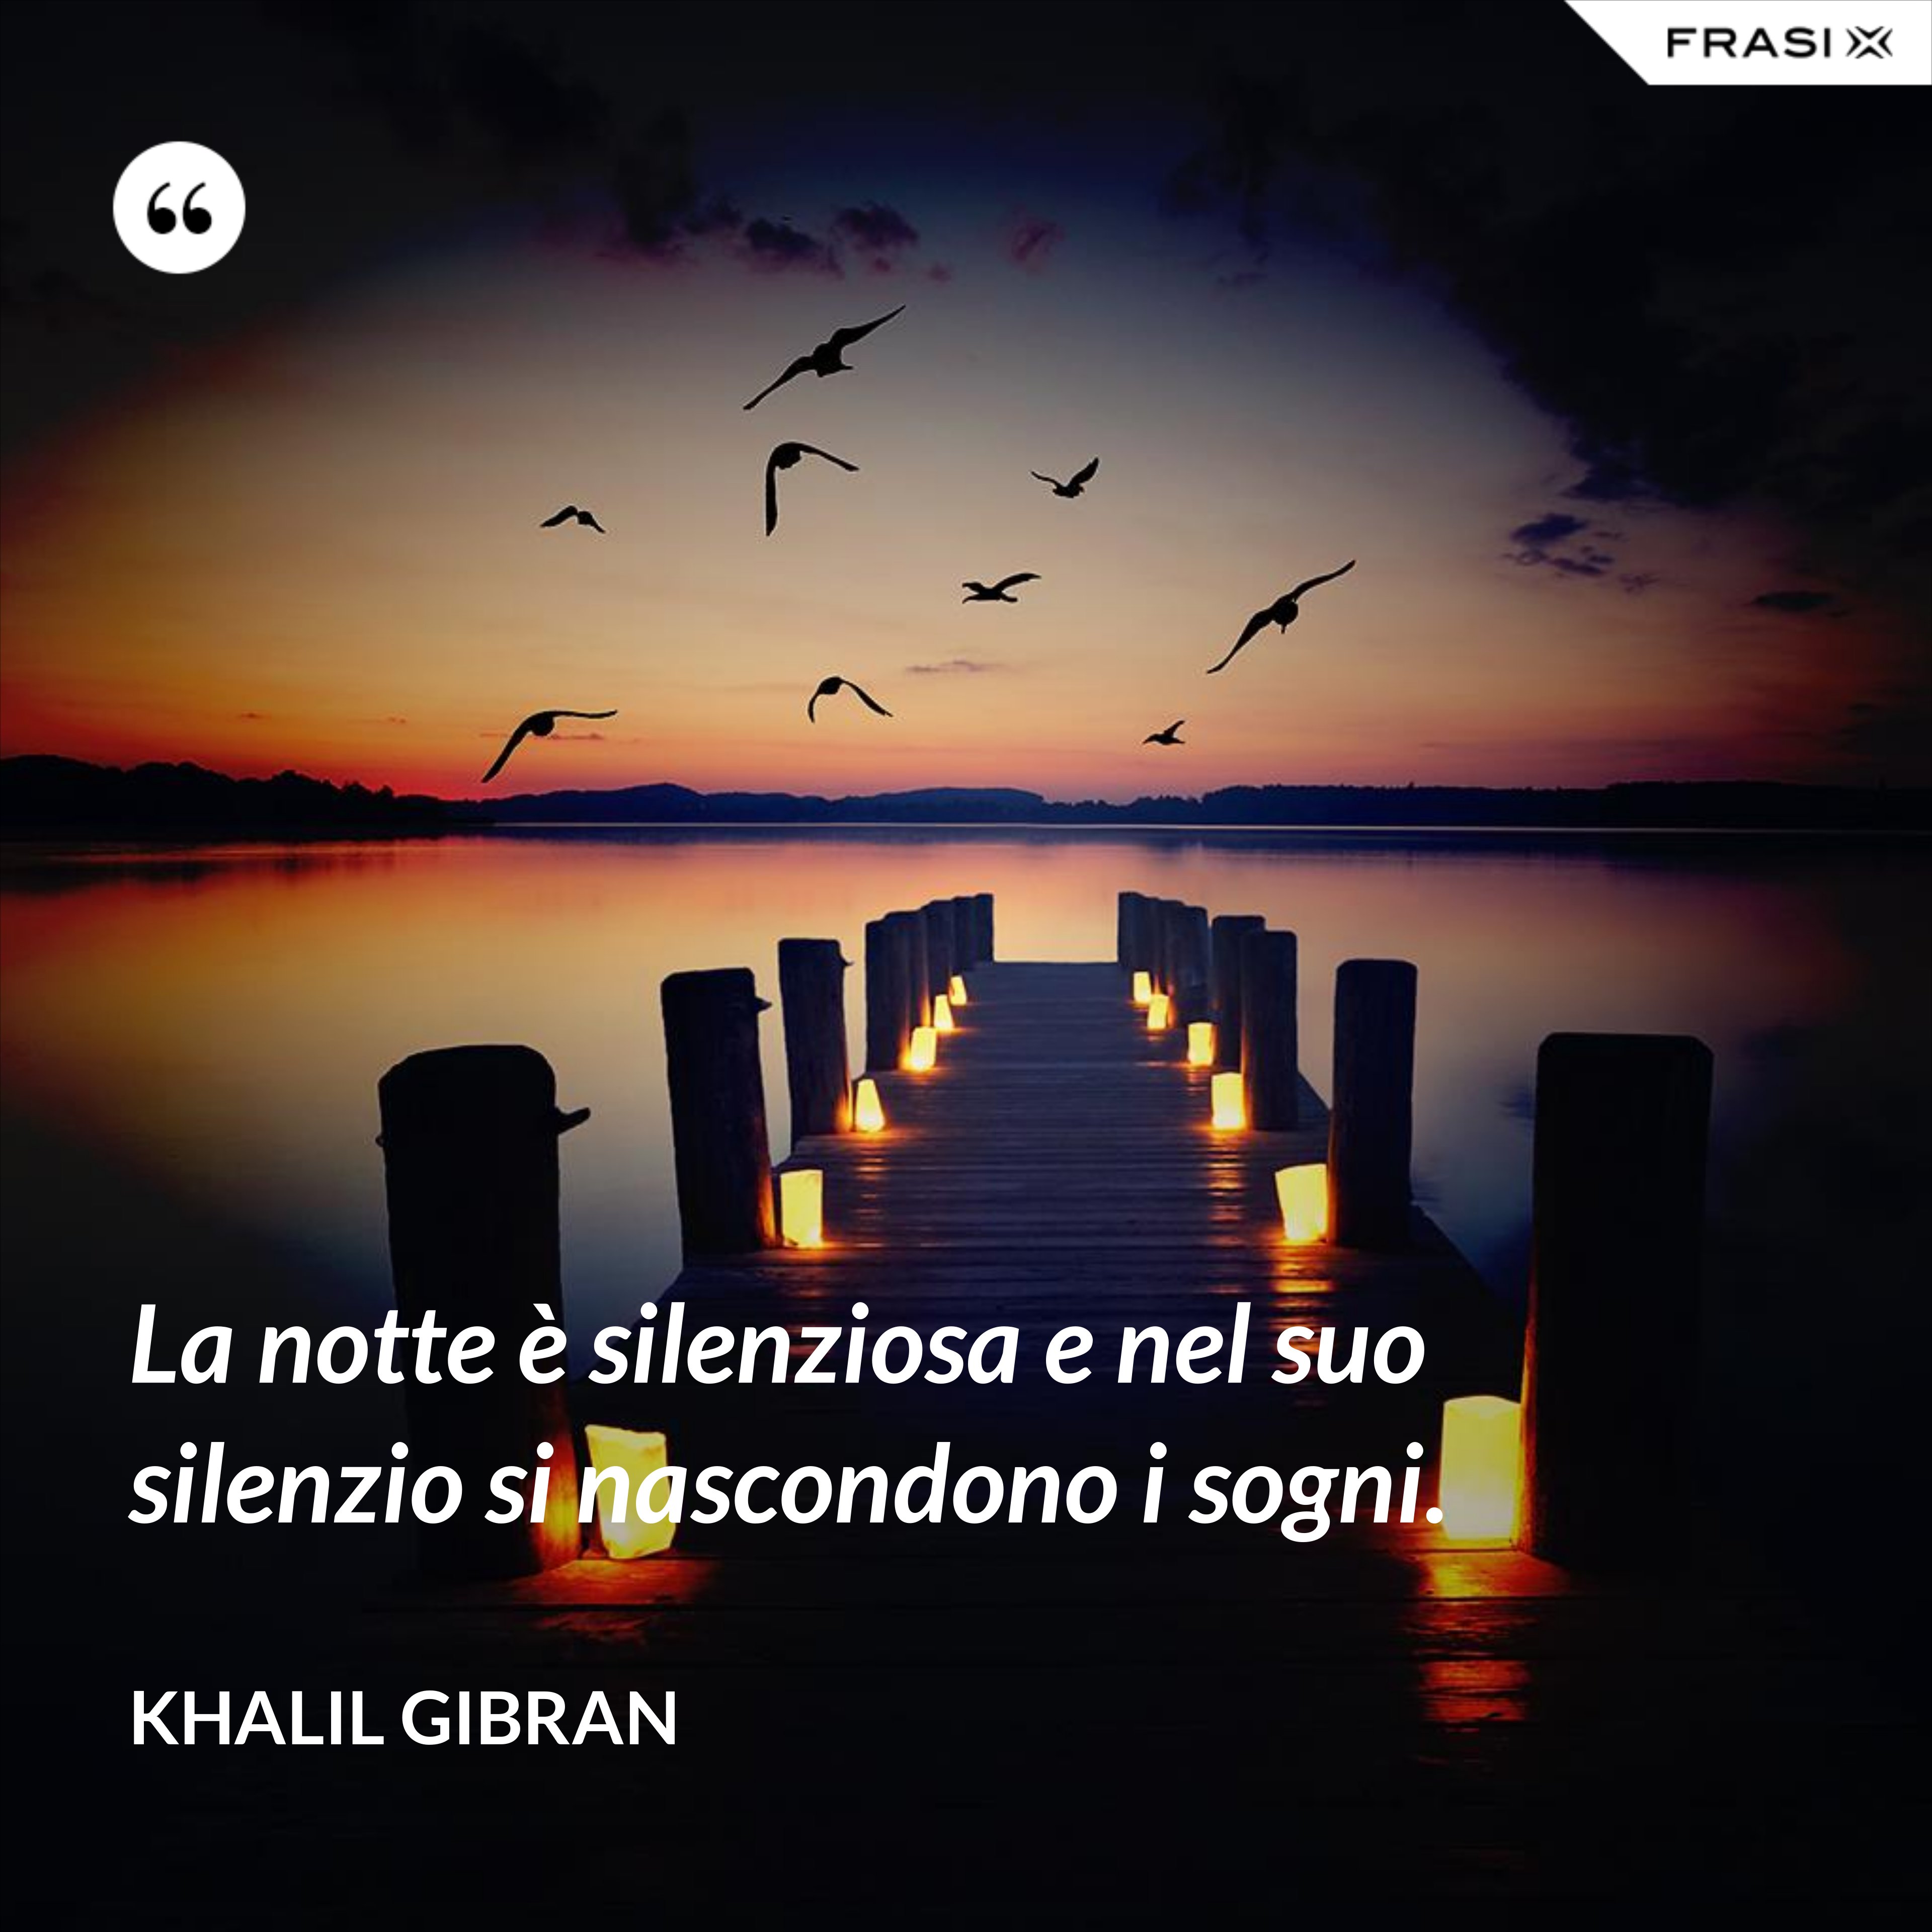 La notte è silenziosa e nel suo silenzio si nascondono i sogni. - Khalil Gibran